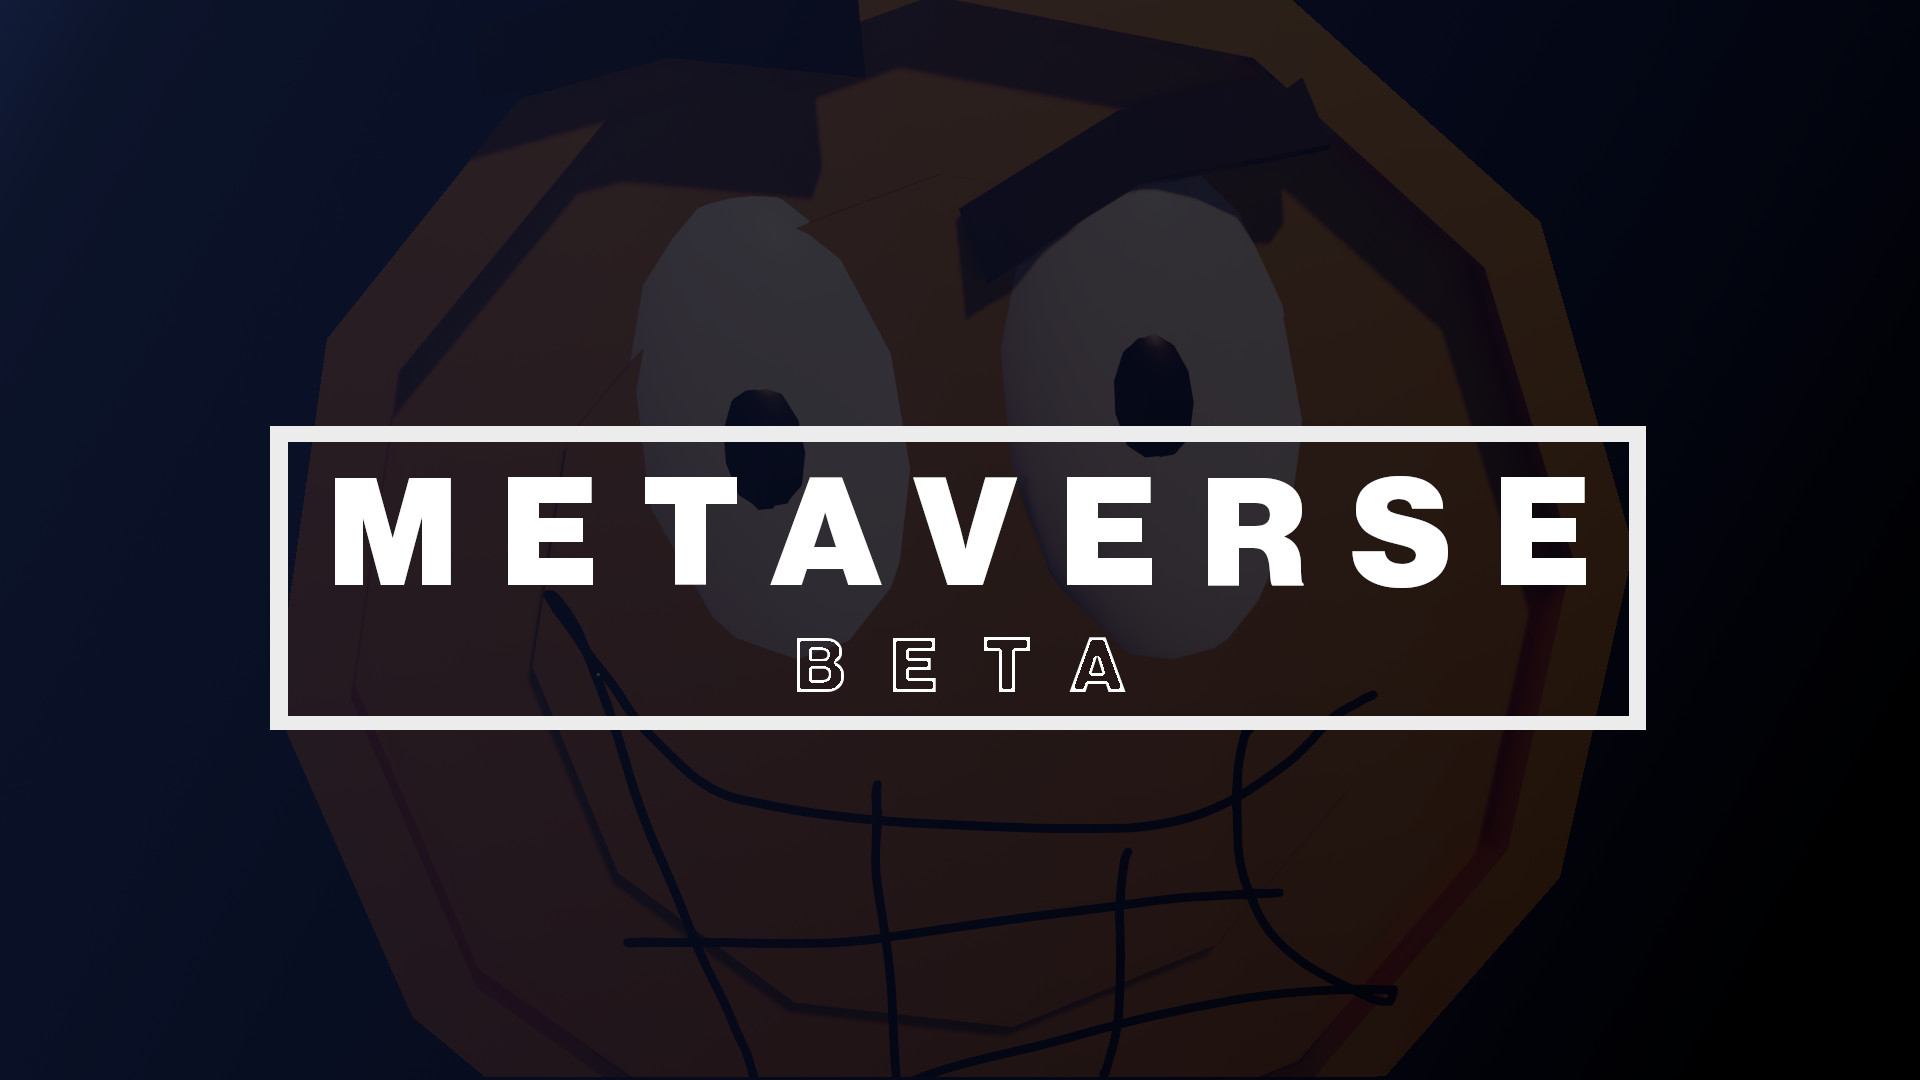 METAVERSE [BETA]